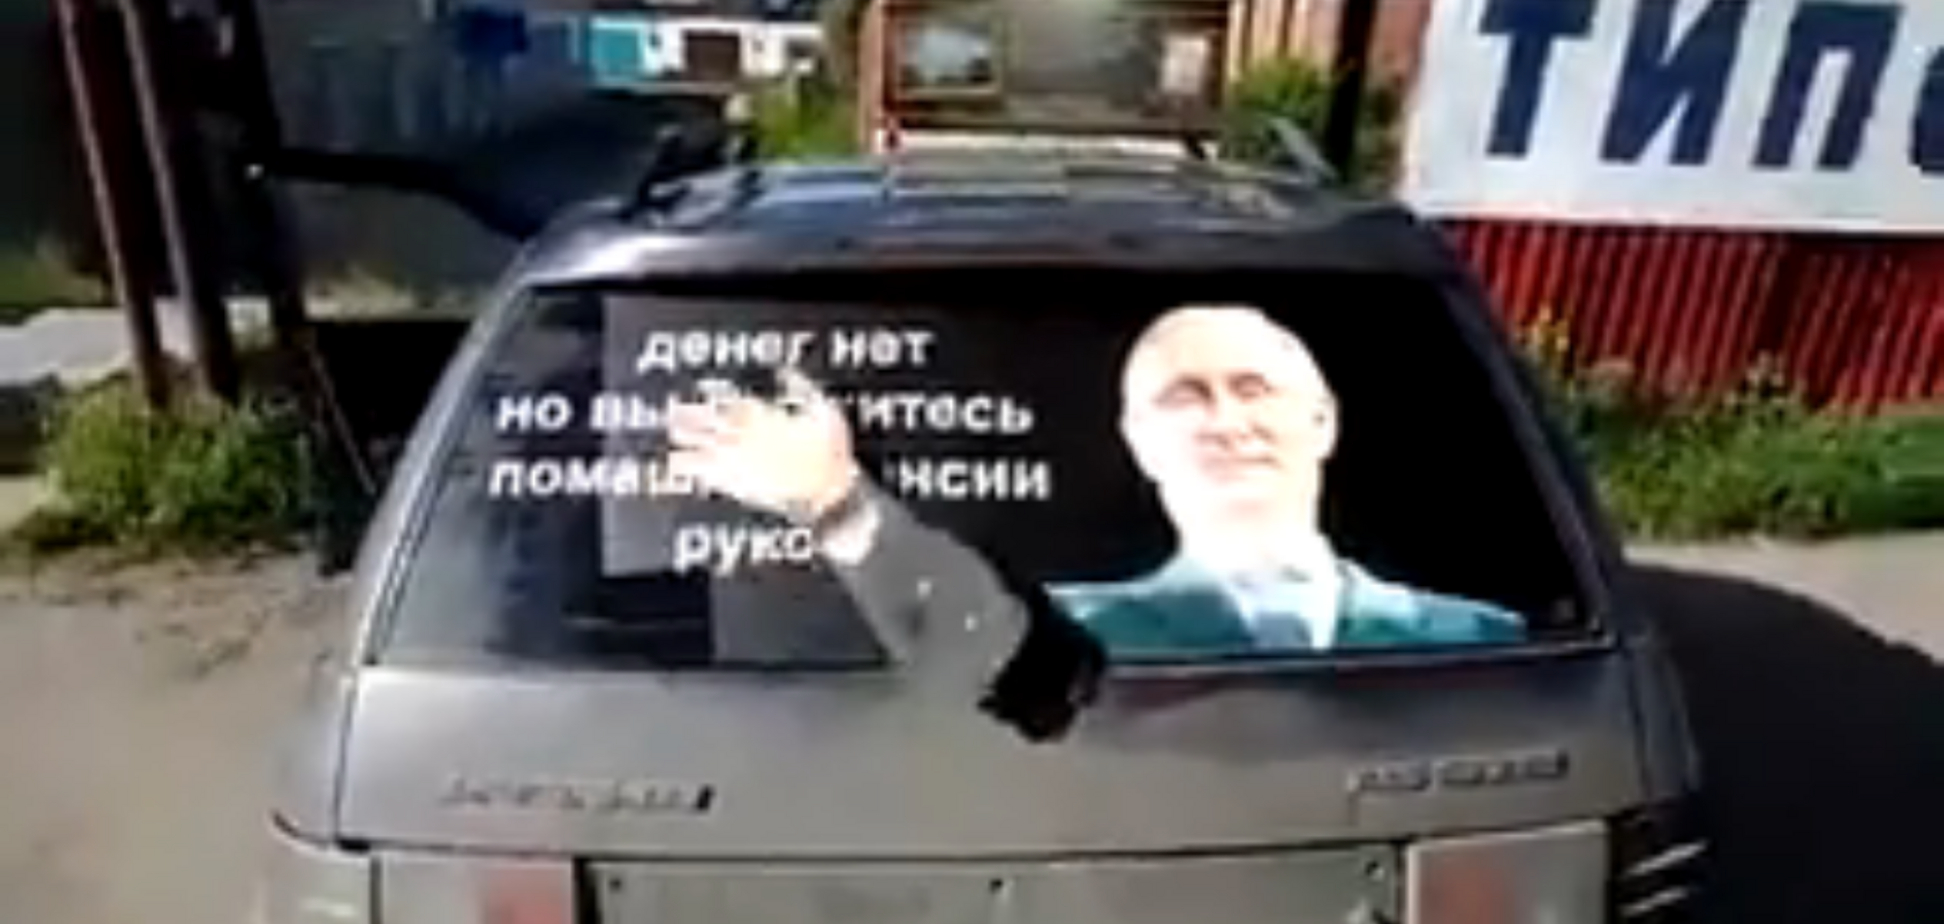 Денег нет, но вы держитесь: в Томске появилась 'пенсионная' инсталляция с Путиным